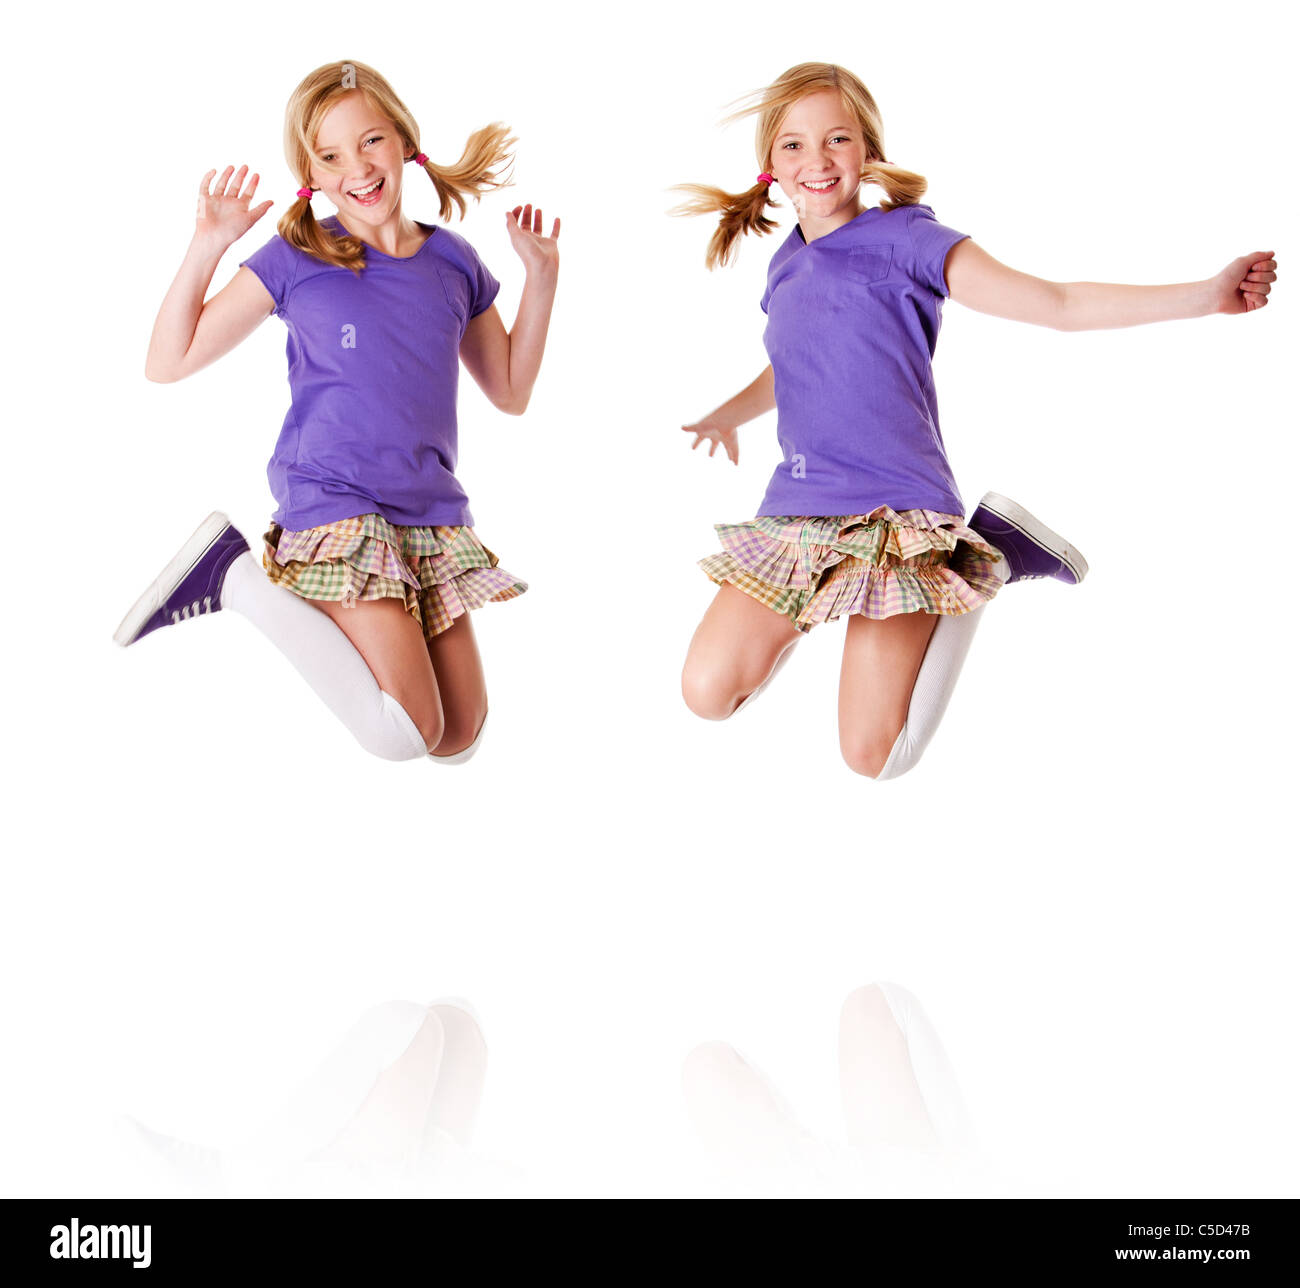 Glücklich Teenager Mädchen eineiige Zwillinge springen und lachen, Freude, Spaß, isoliert. Stockfoto